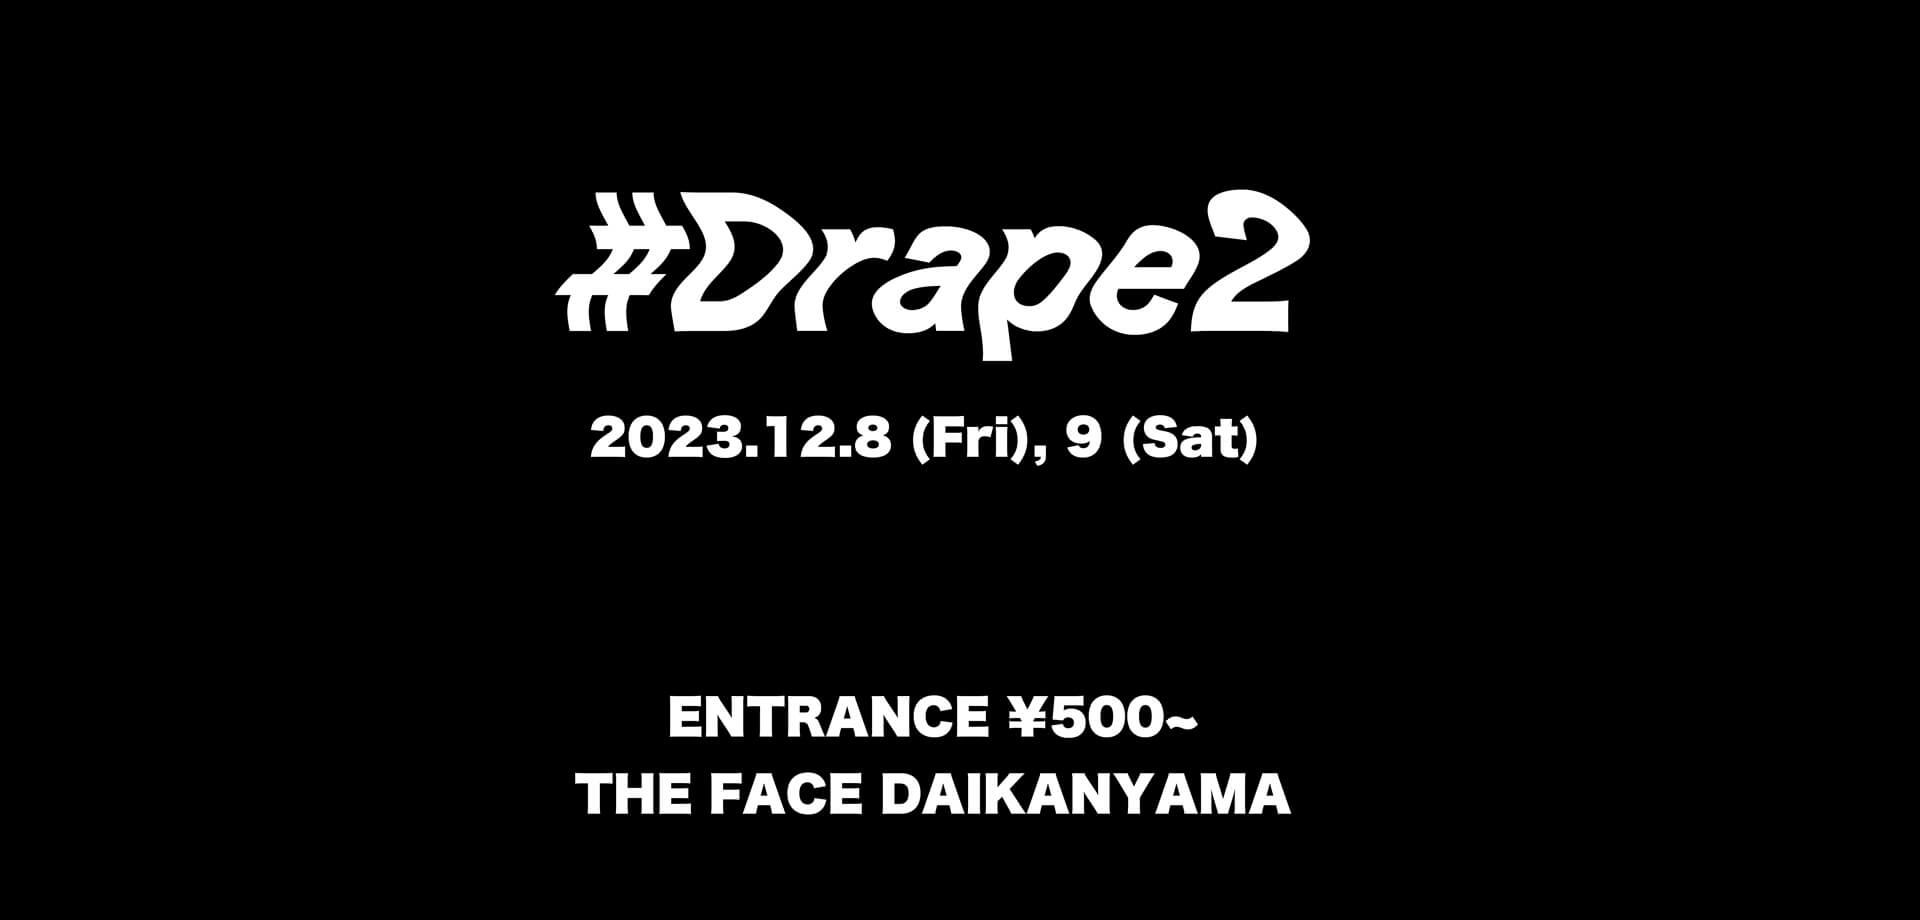 代官山マーケットイベント#Drape2